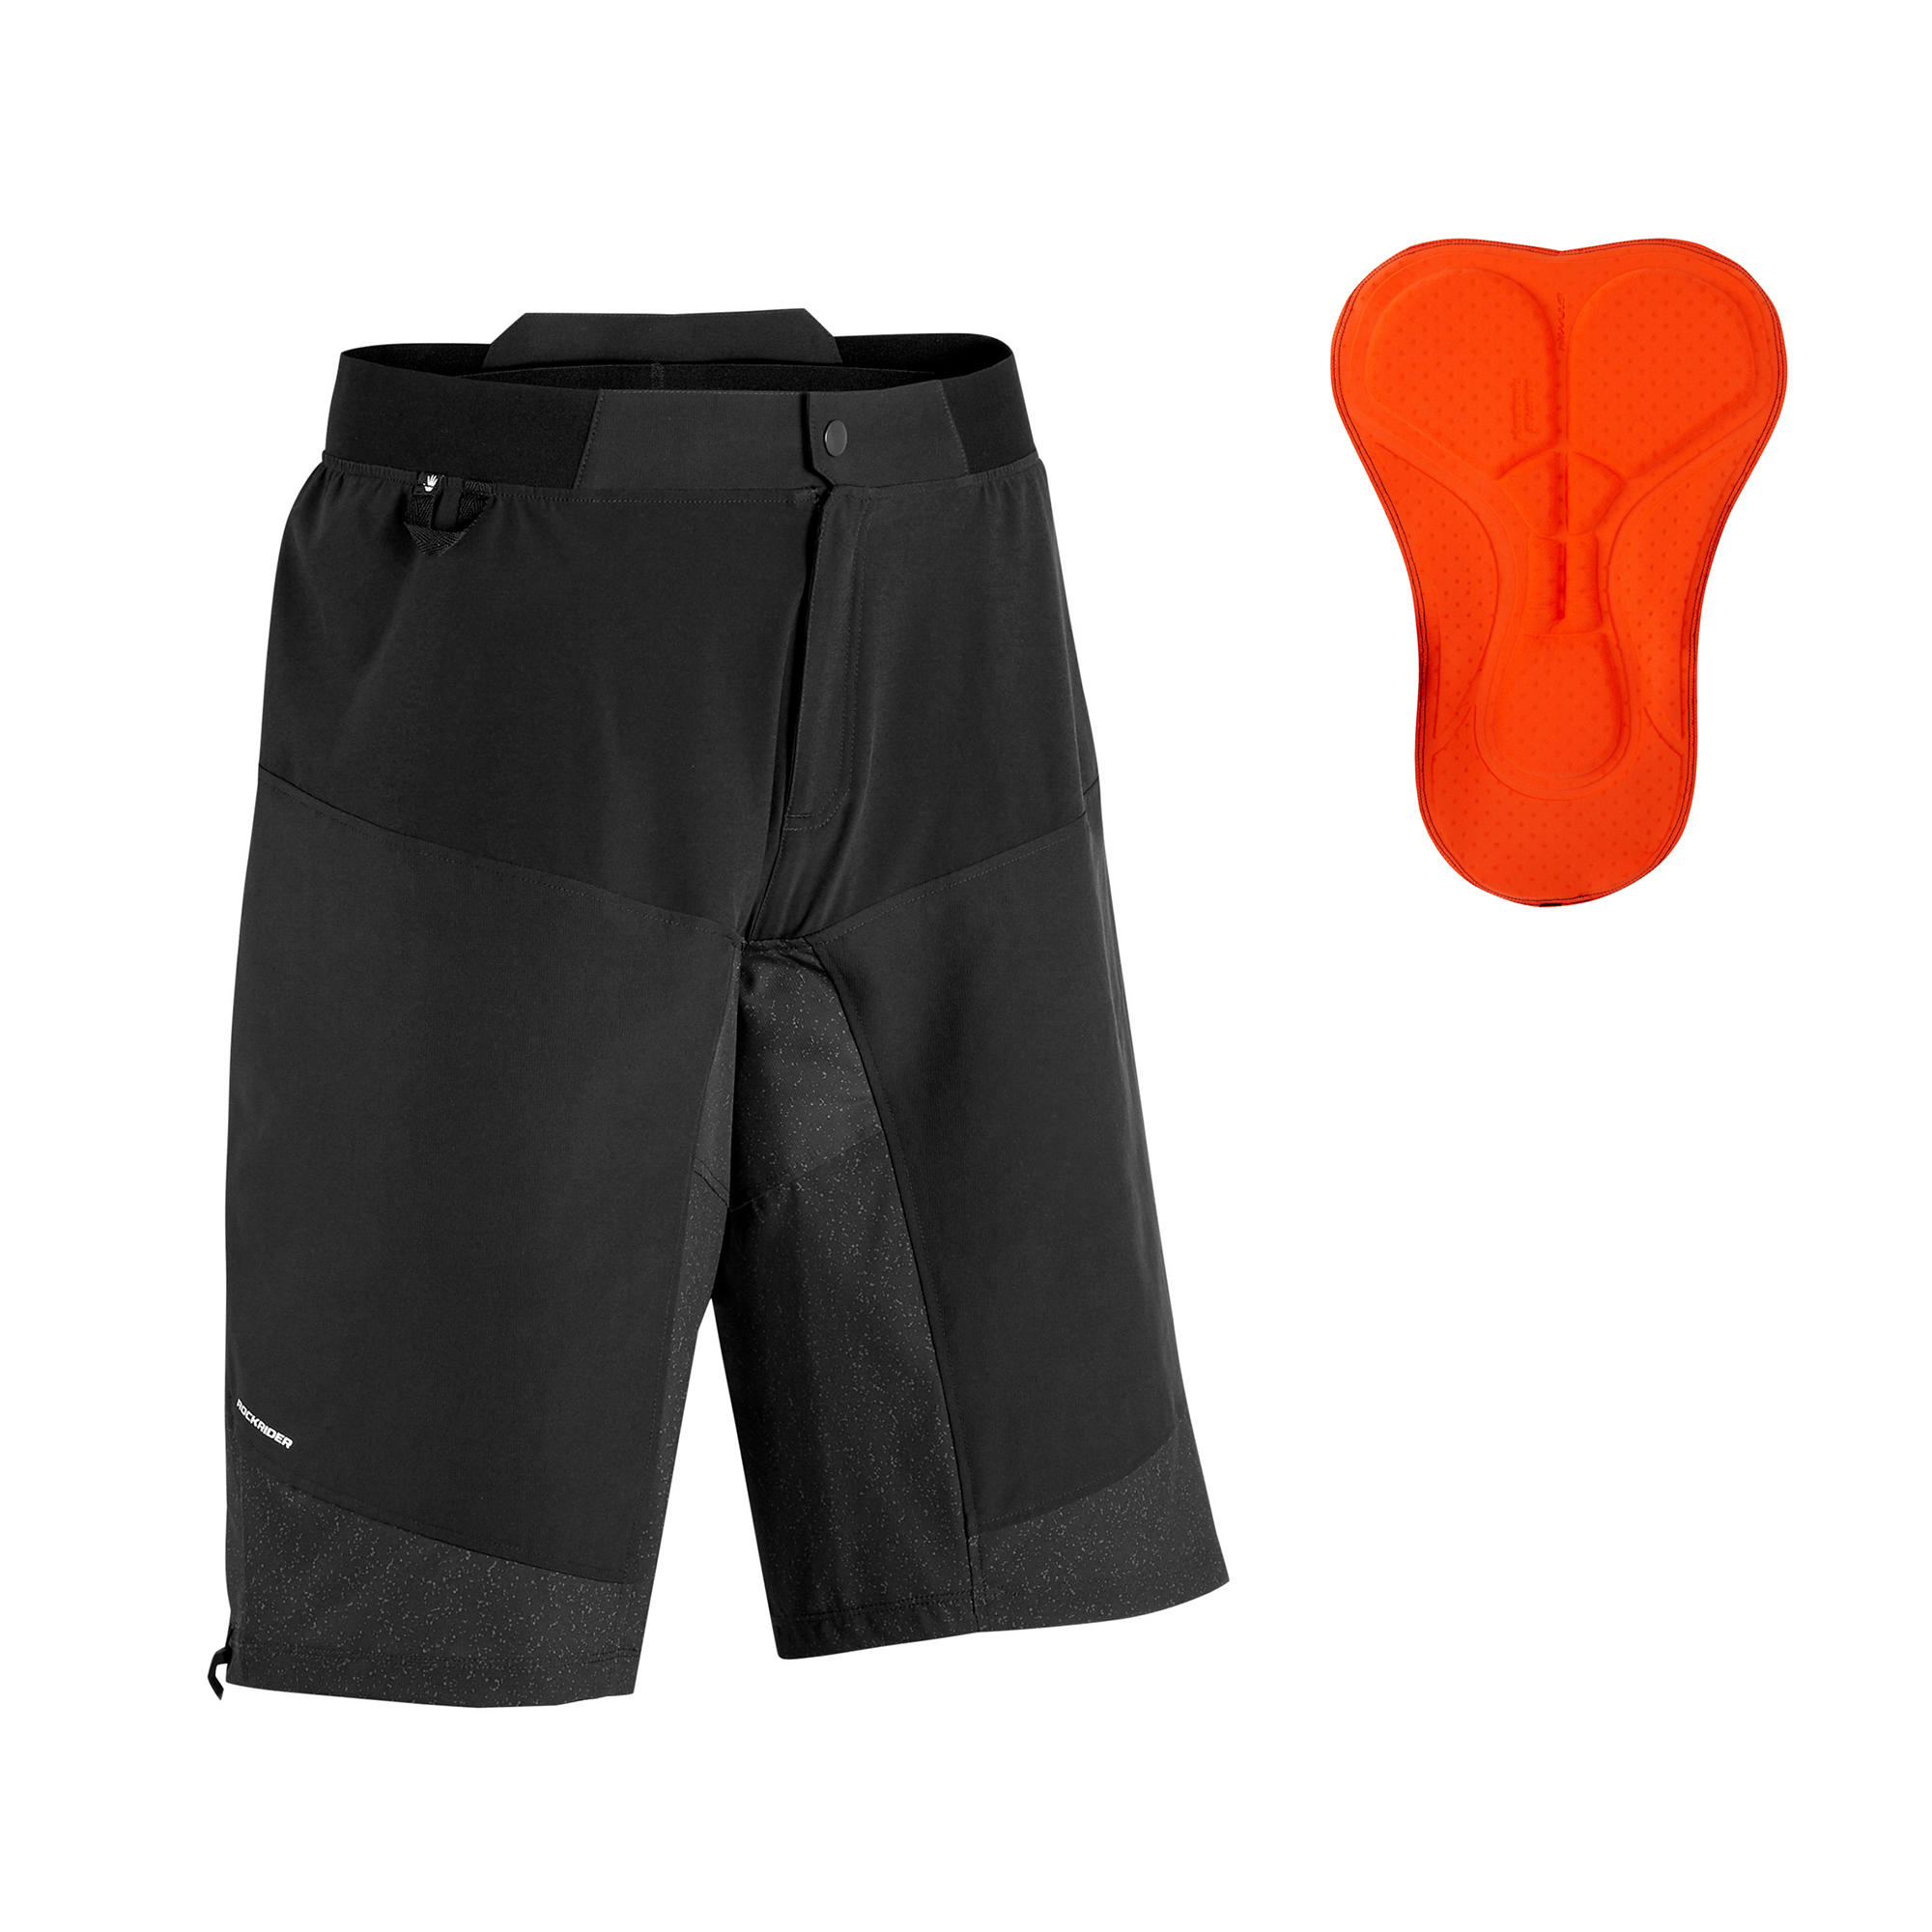 Homme Baleaf 3D rembourré Cool vélo Max Sous-vêtements Shorts-Noir/Orange moyen 